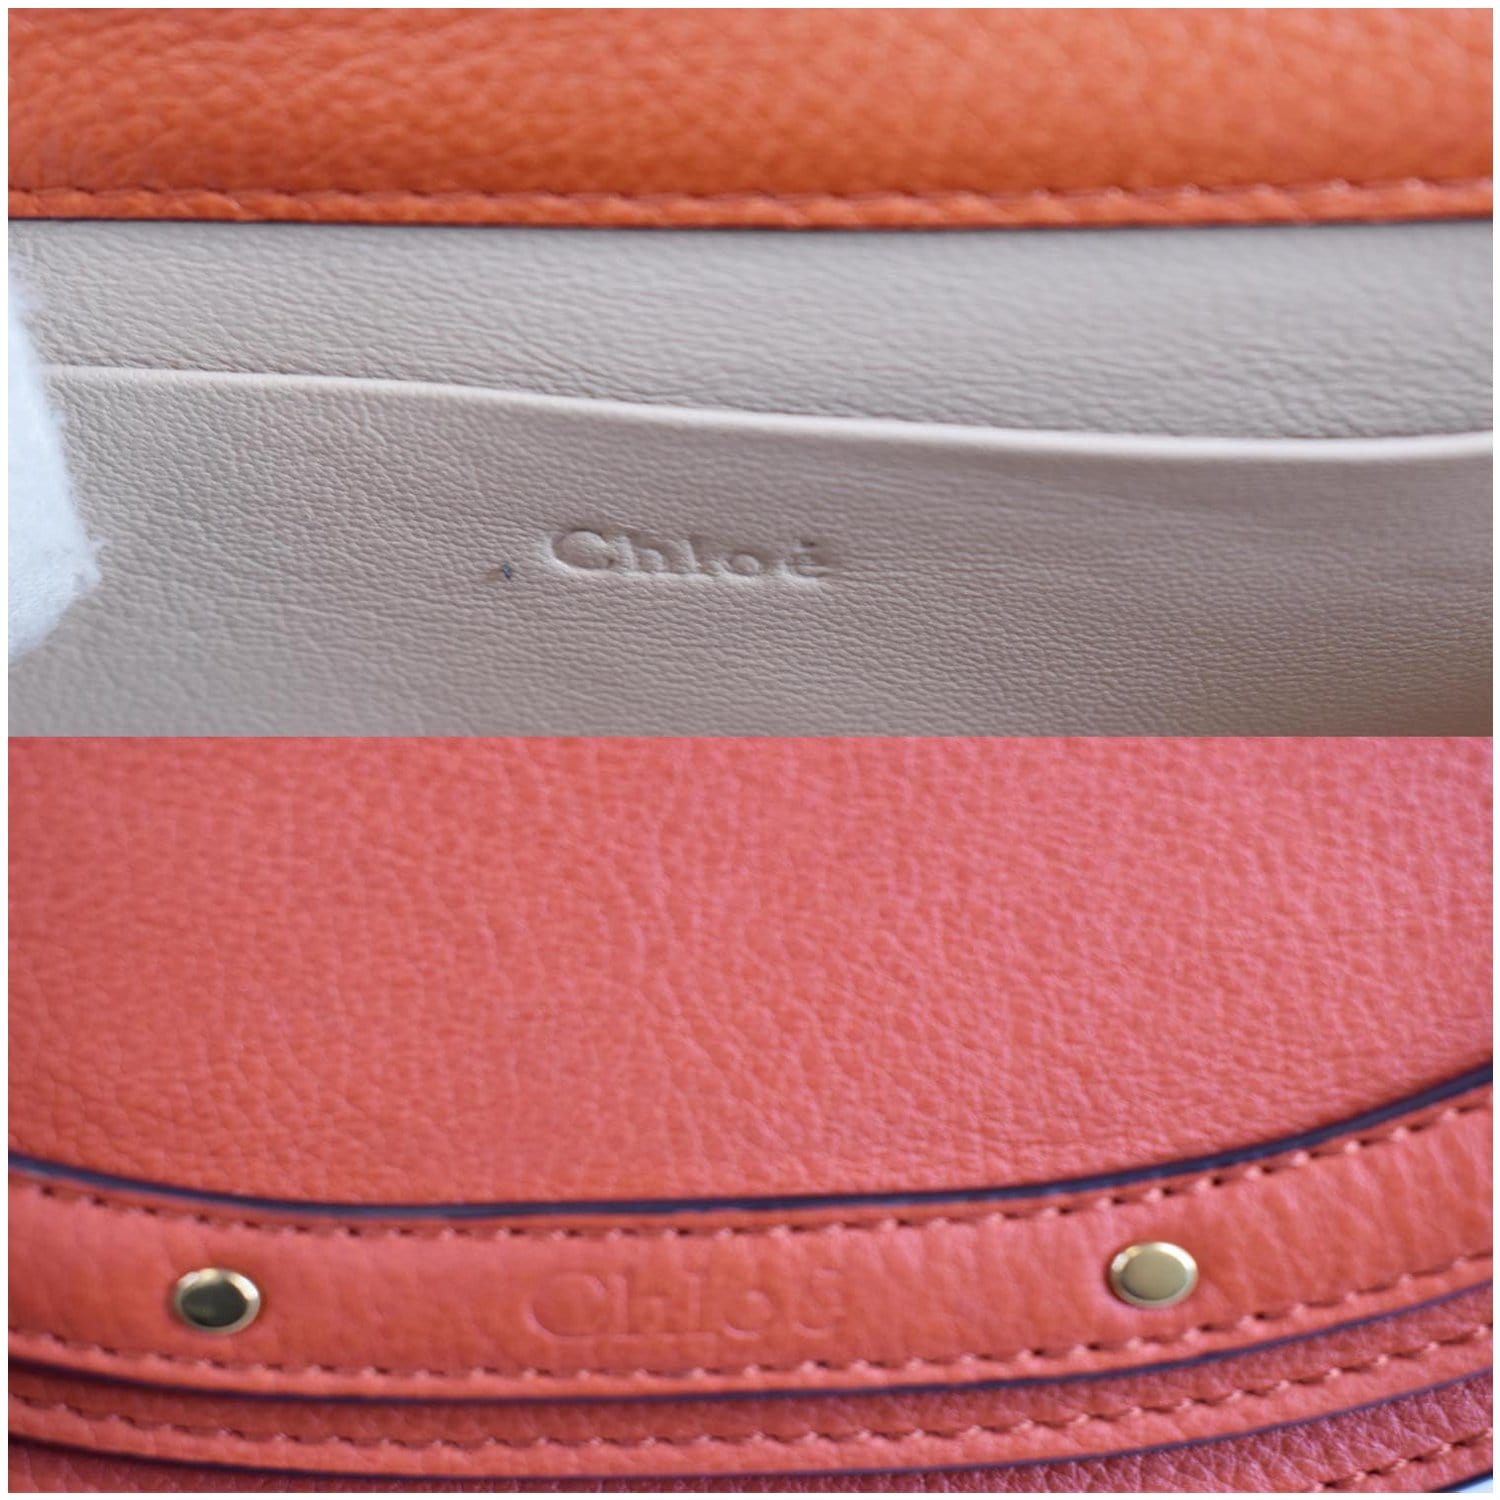 Chloe Nile Medium Bracelet Saddle Black Leather Shoulder Bag - MyDesignerly